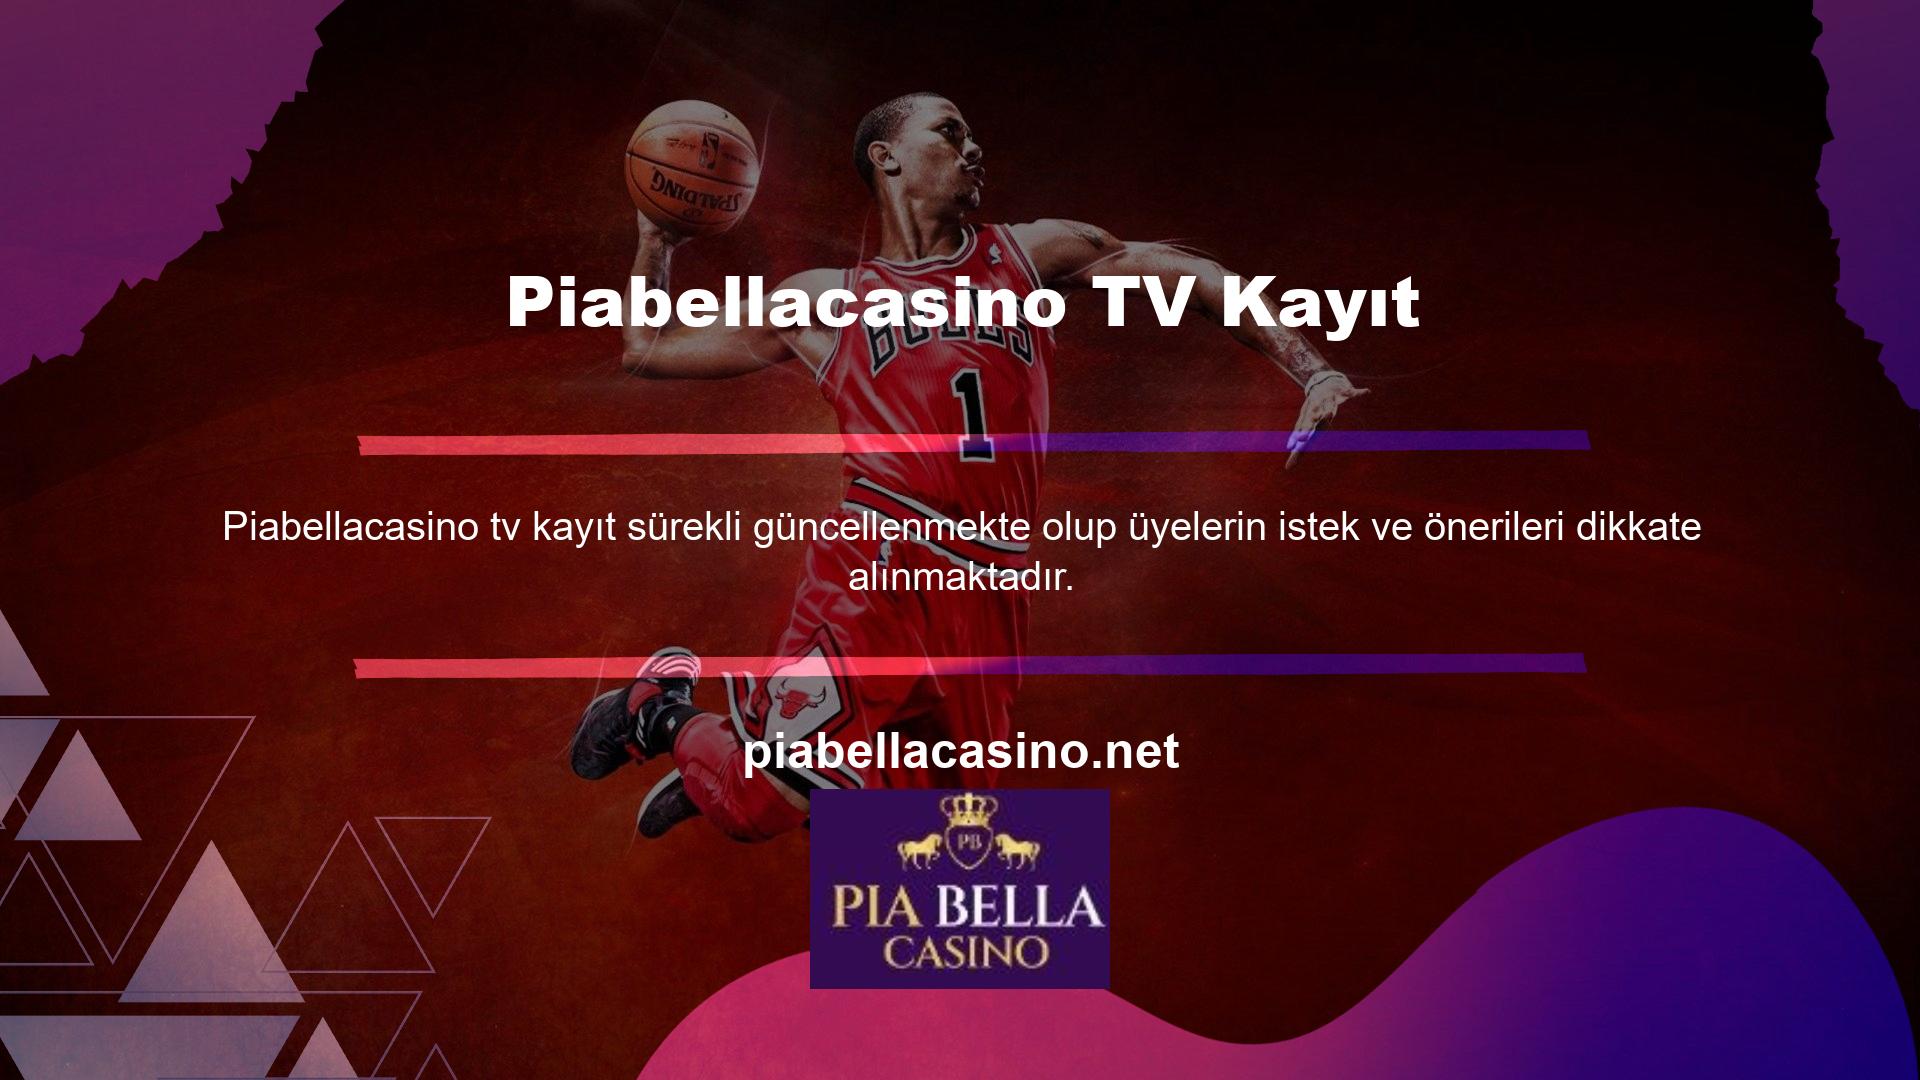 Lütfen Piabellacasino TV'ye abone olun